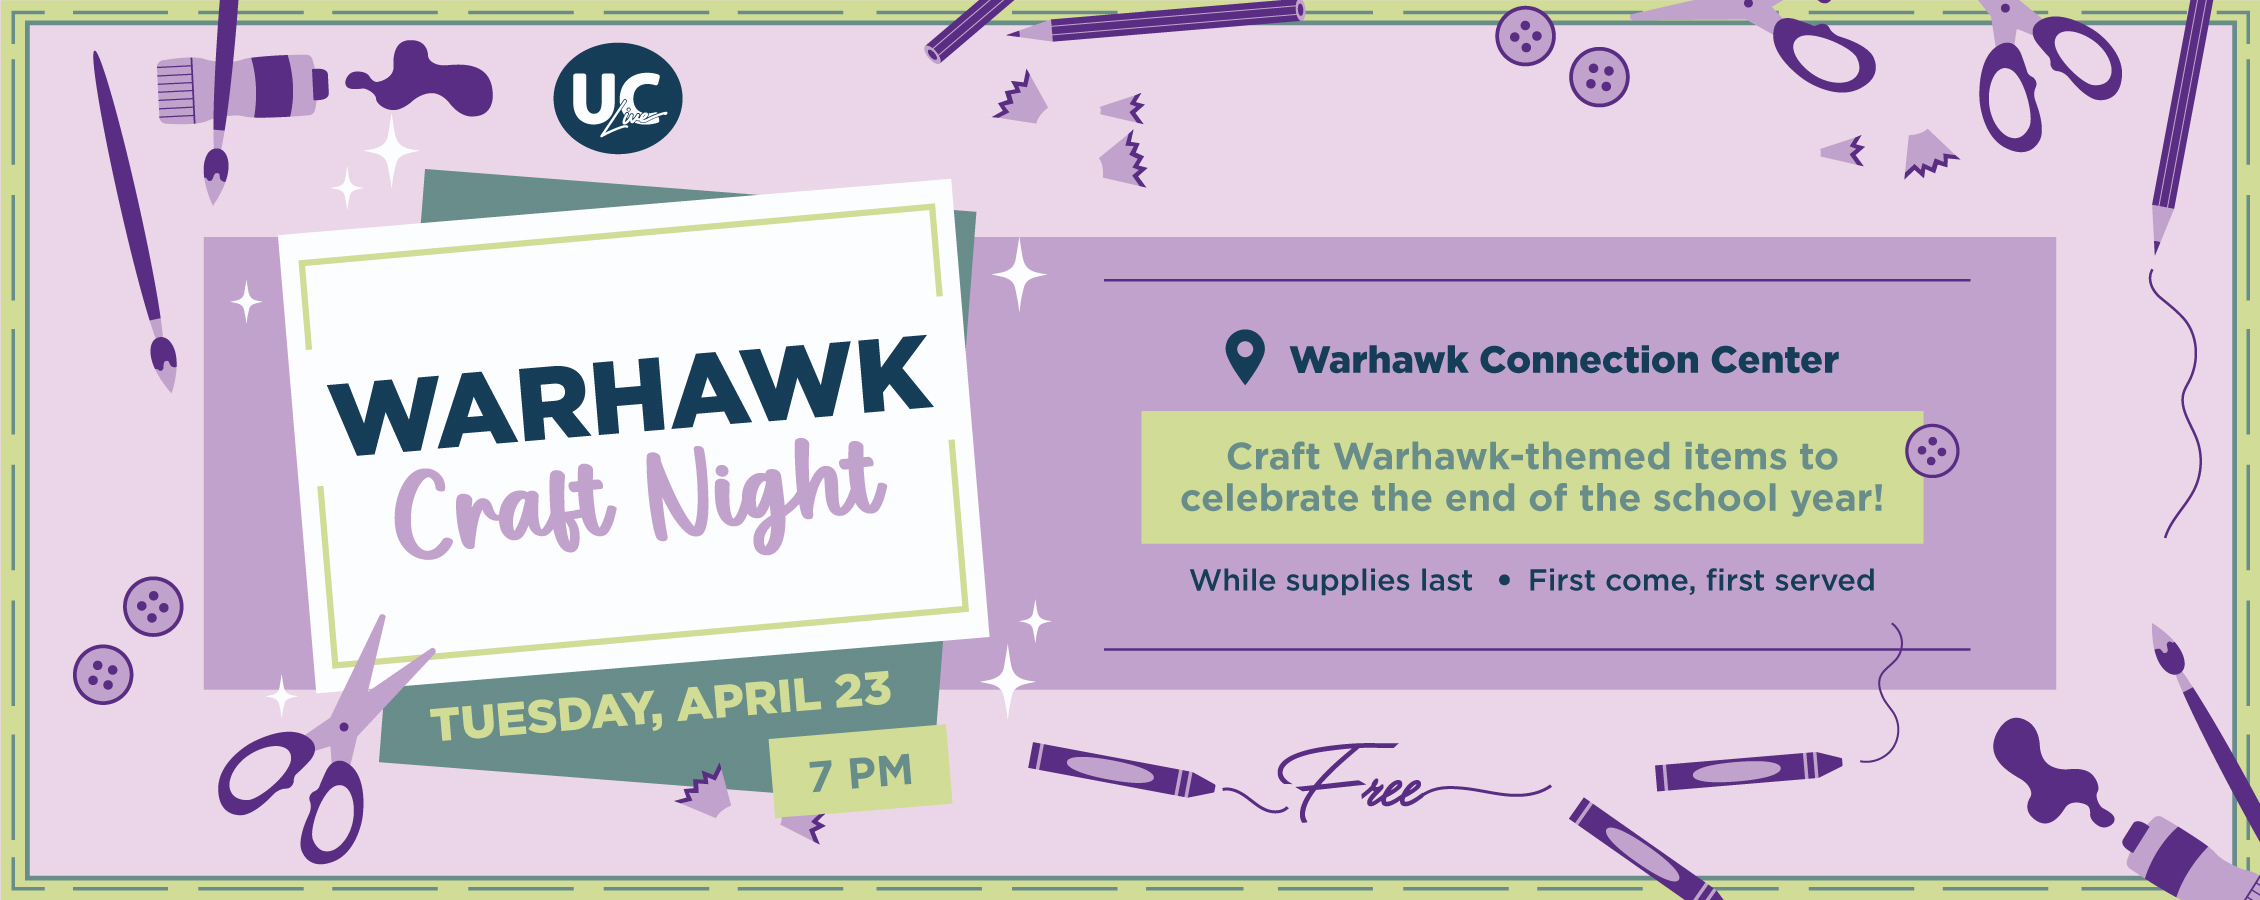 Warhawk Craft Night